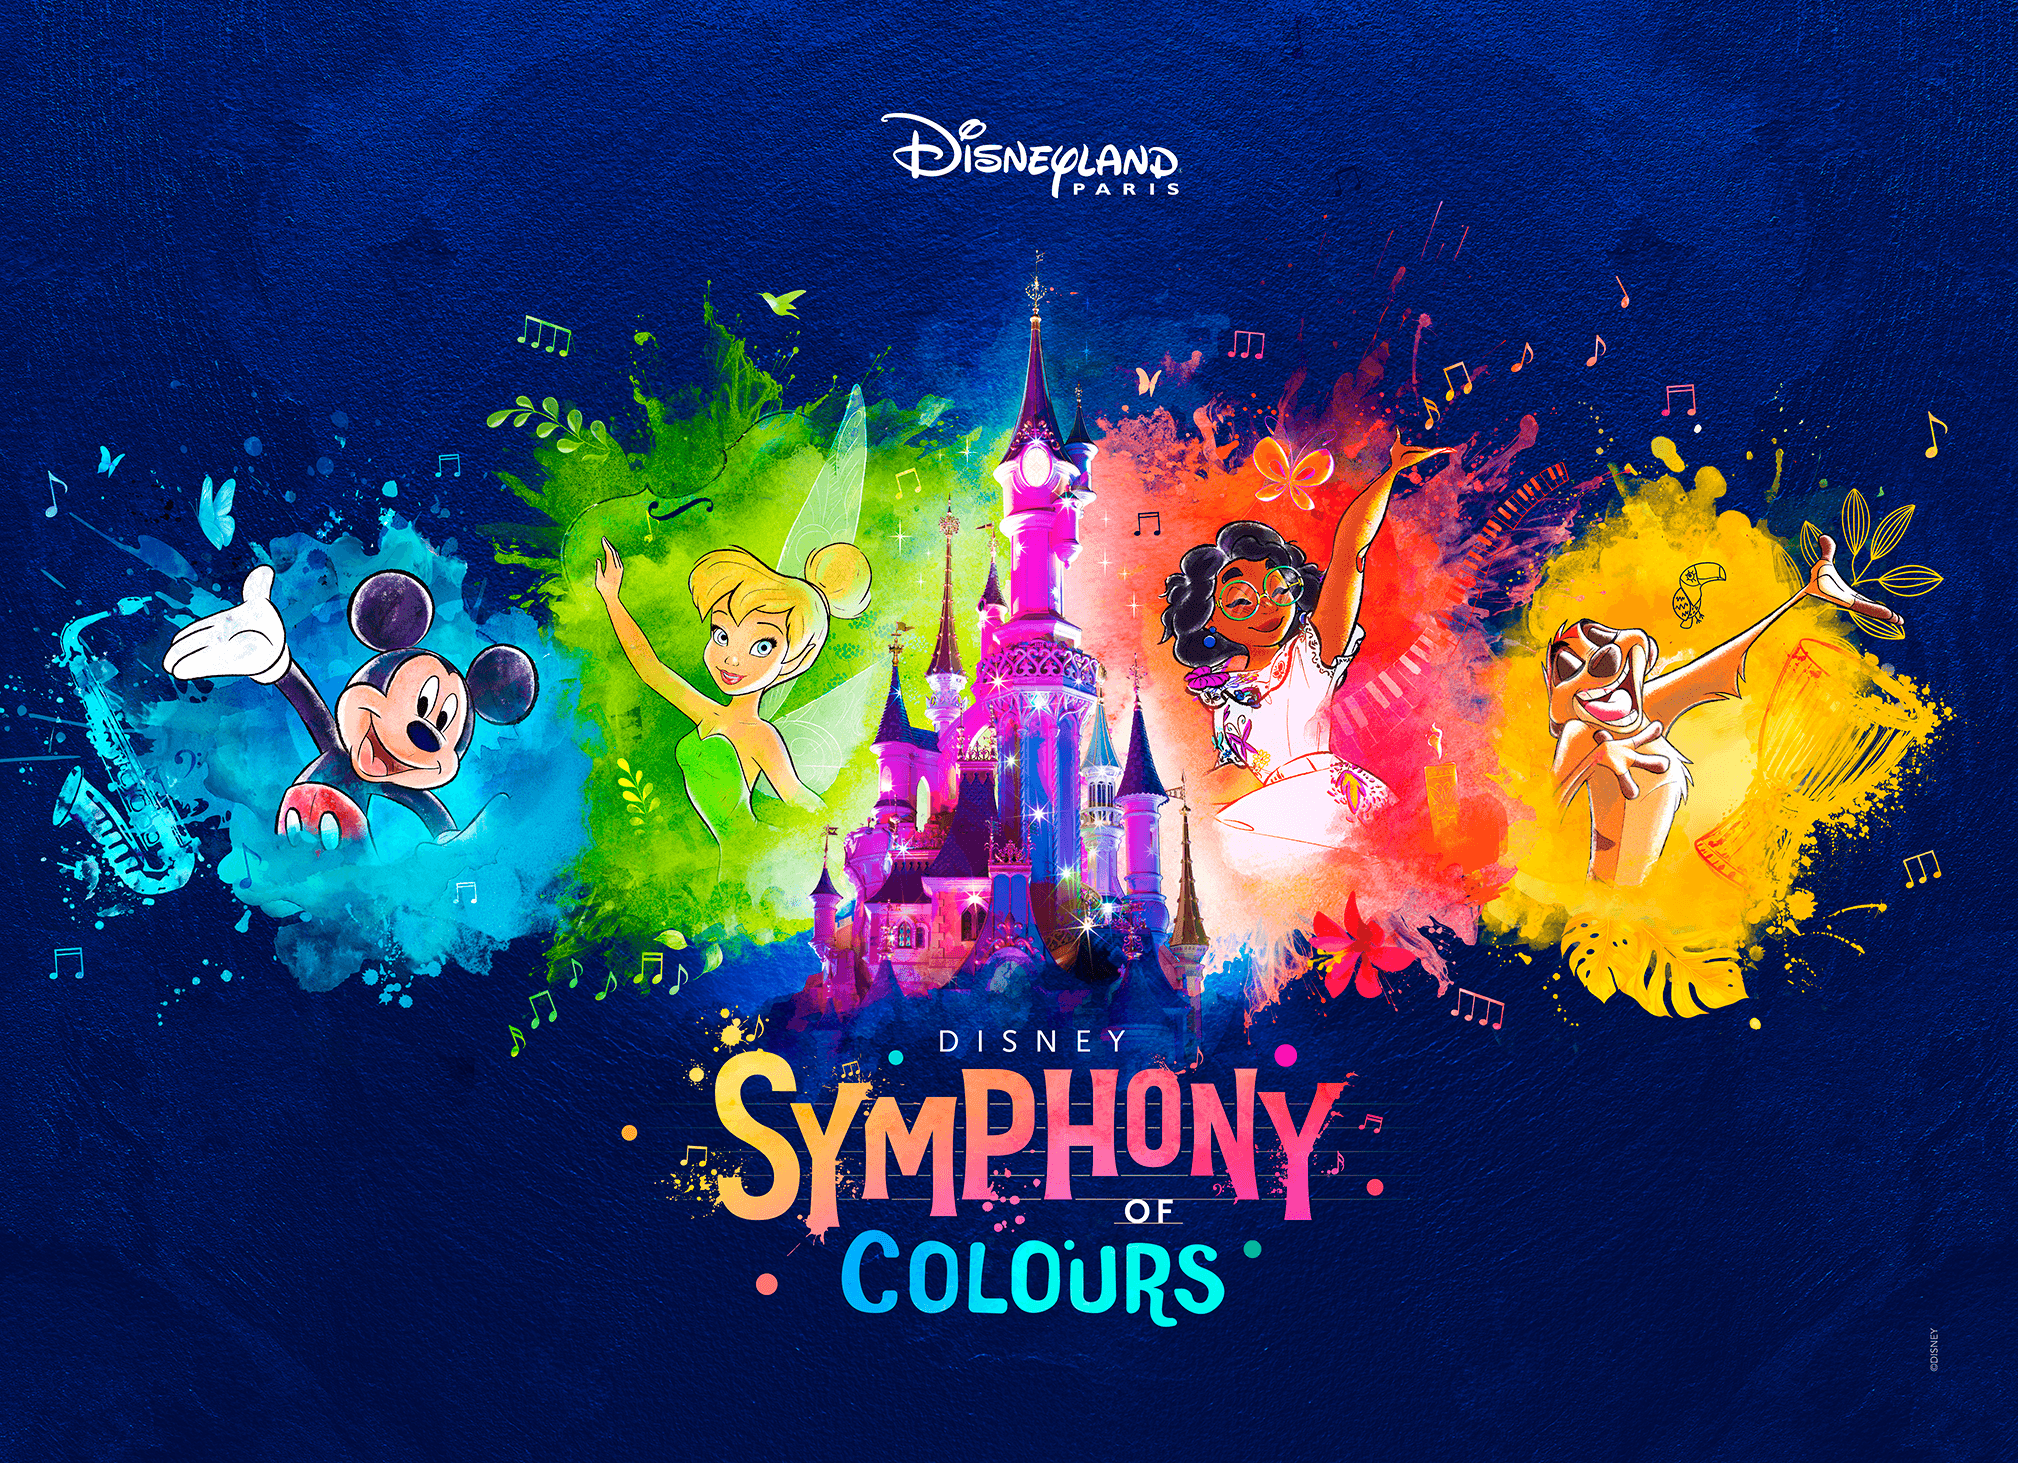 Château de Disneyland Paris entouré de Mickey, Mirabel, Timon et la Fée Clochette, avec le texte "Disney Symphony of Colours"